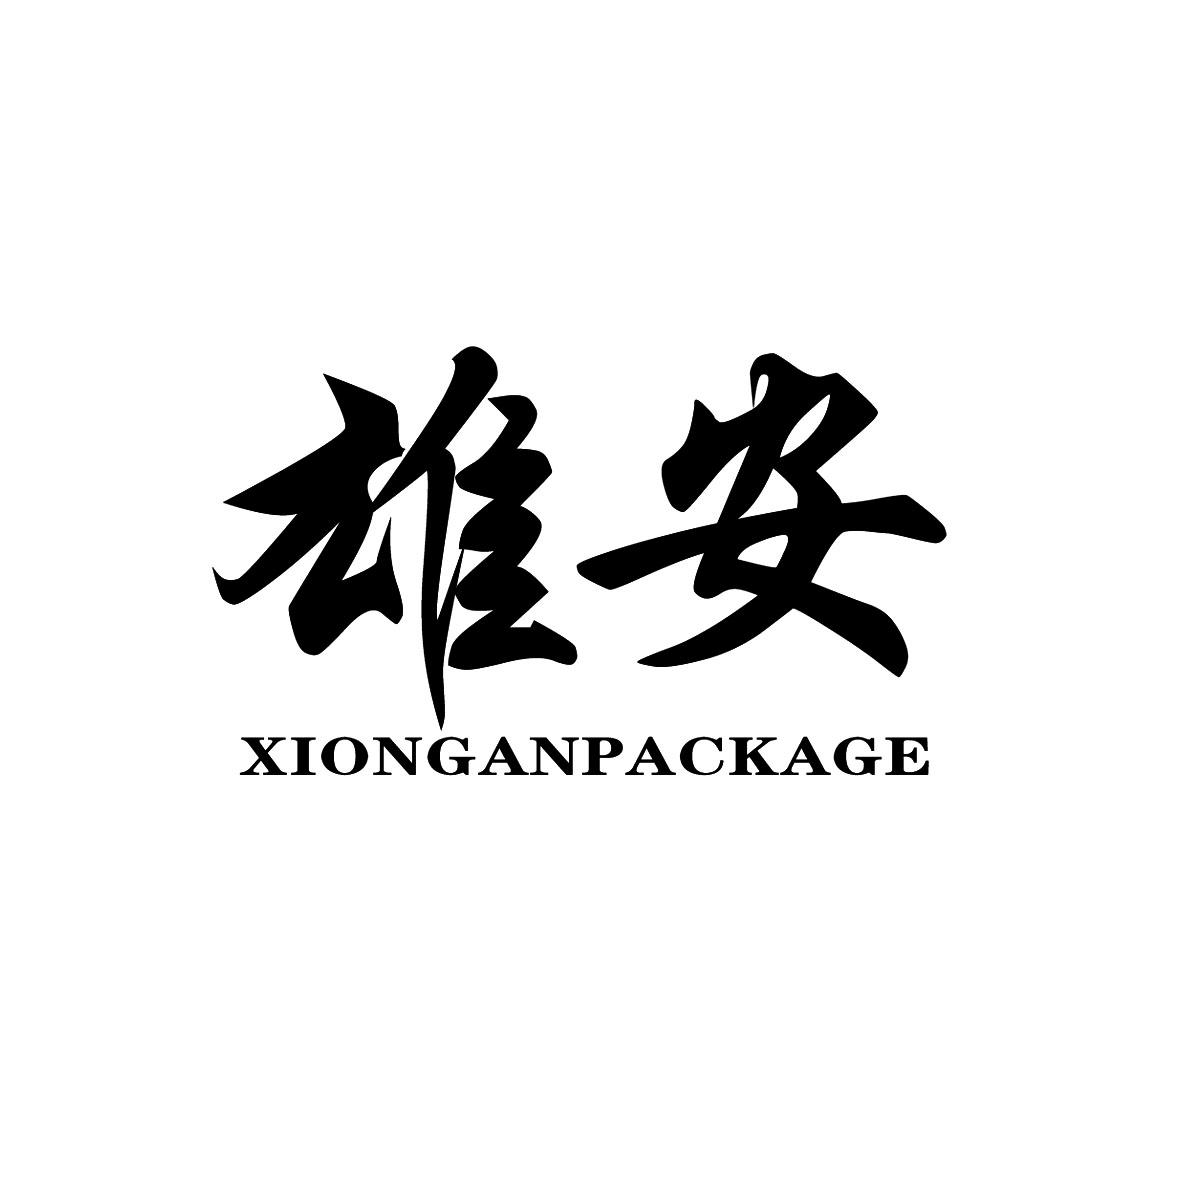 中国雄安集团logo图片